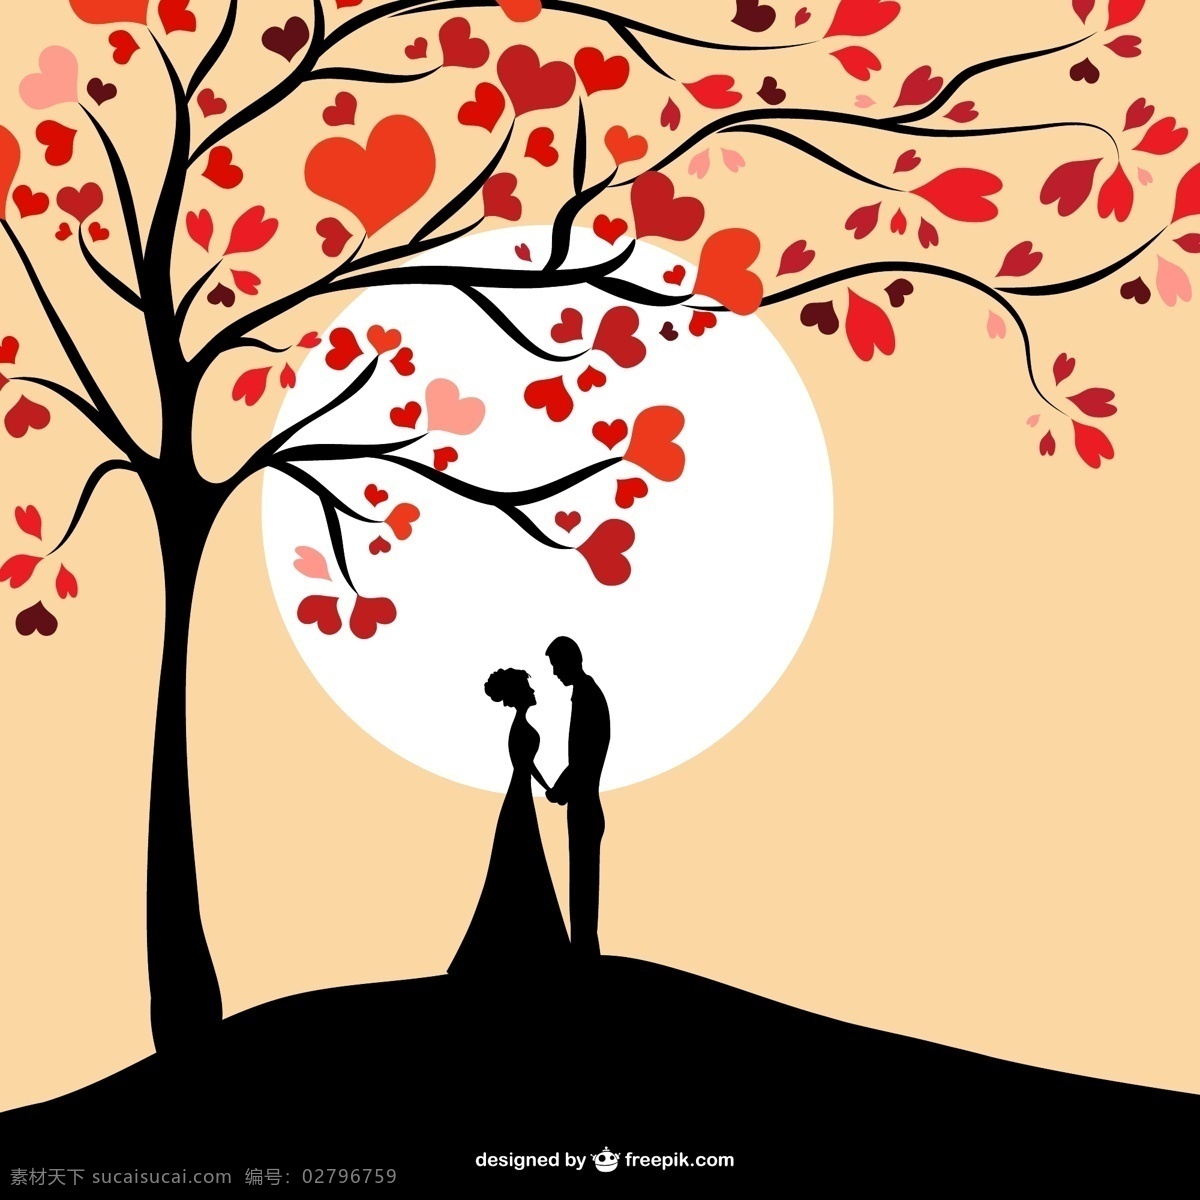 太阳 情侣 剪影 树 心 爱 卡 人 叶 情人节 叶子的轮廓 夫妻 情人节的夜晚 日落 插图 日期 女人的轮廓 树的剪影 黄色